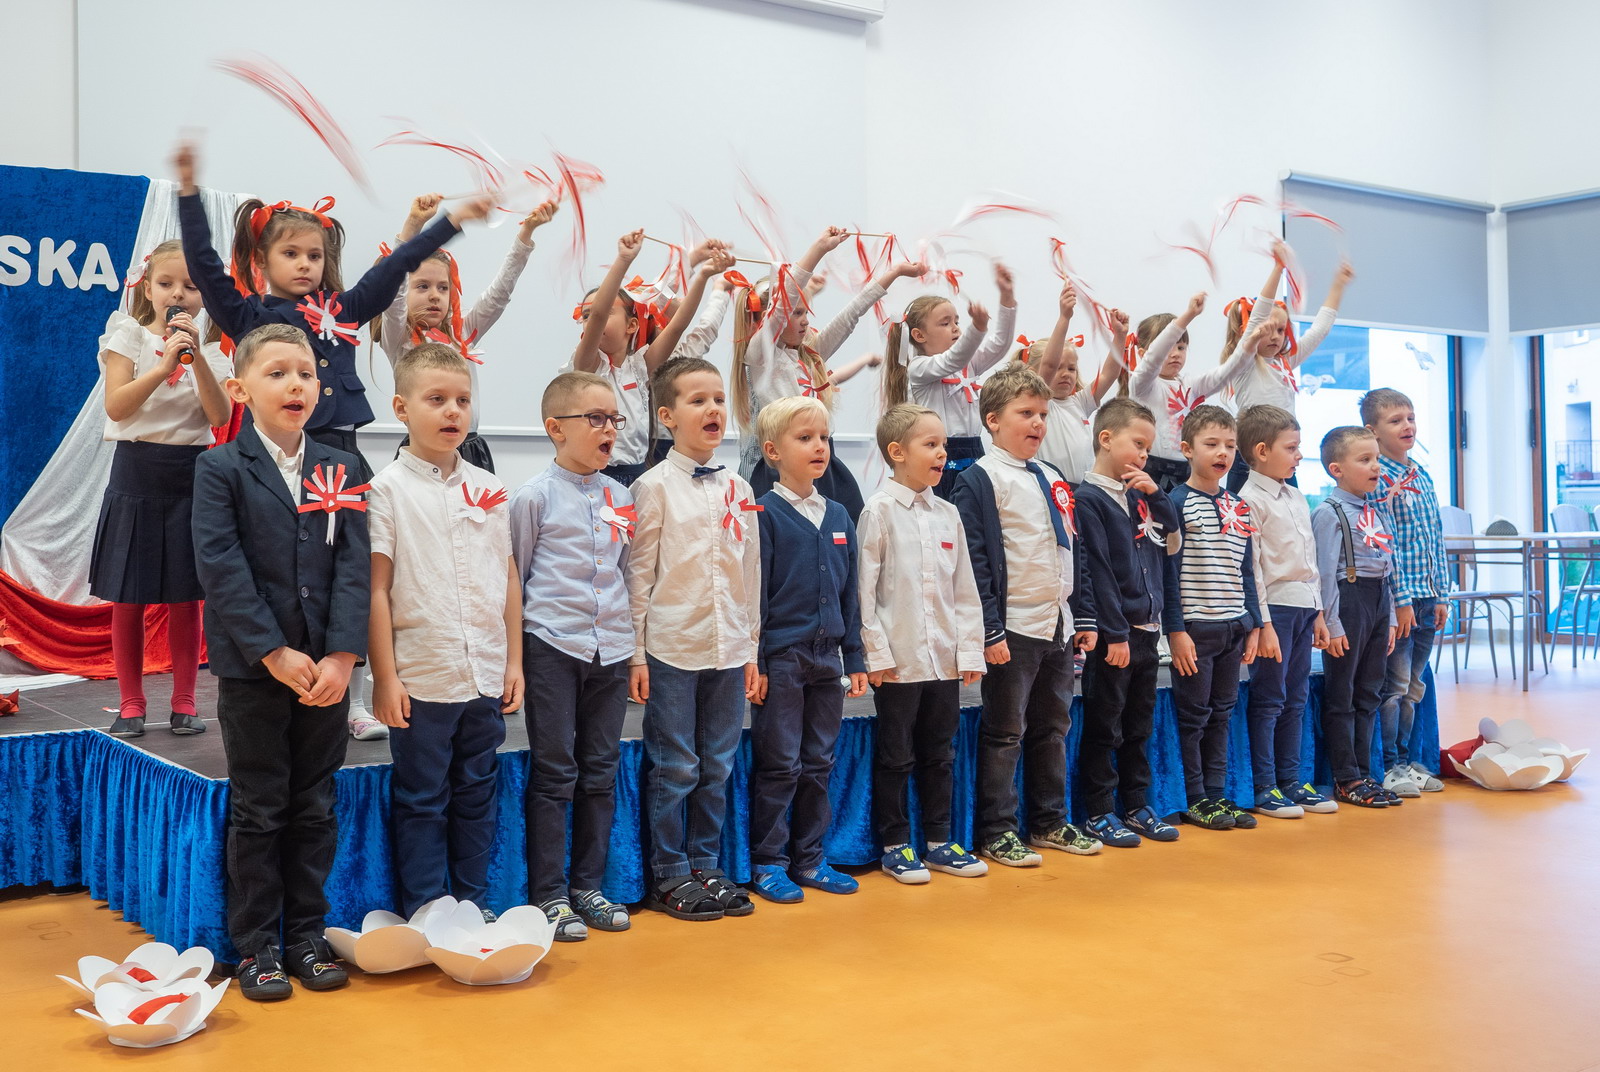 Obchody Dnia Niepodległości i udział w akcji "Szkoła do hymnu"